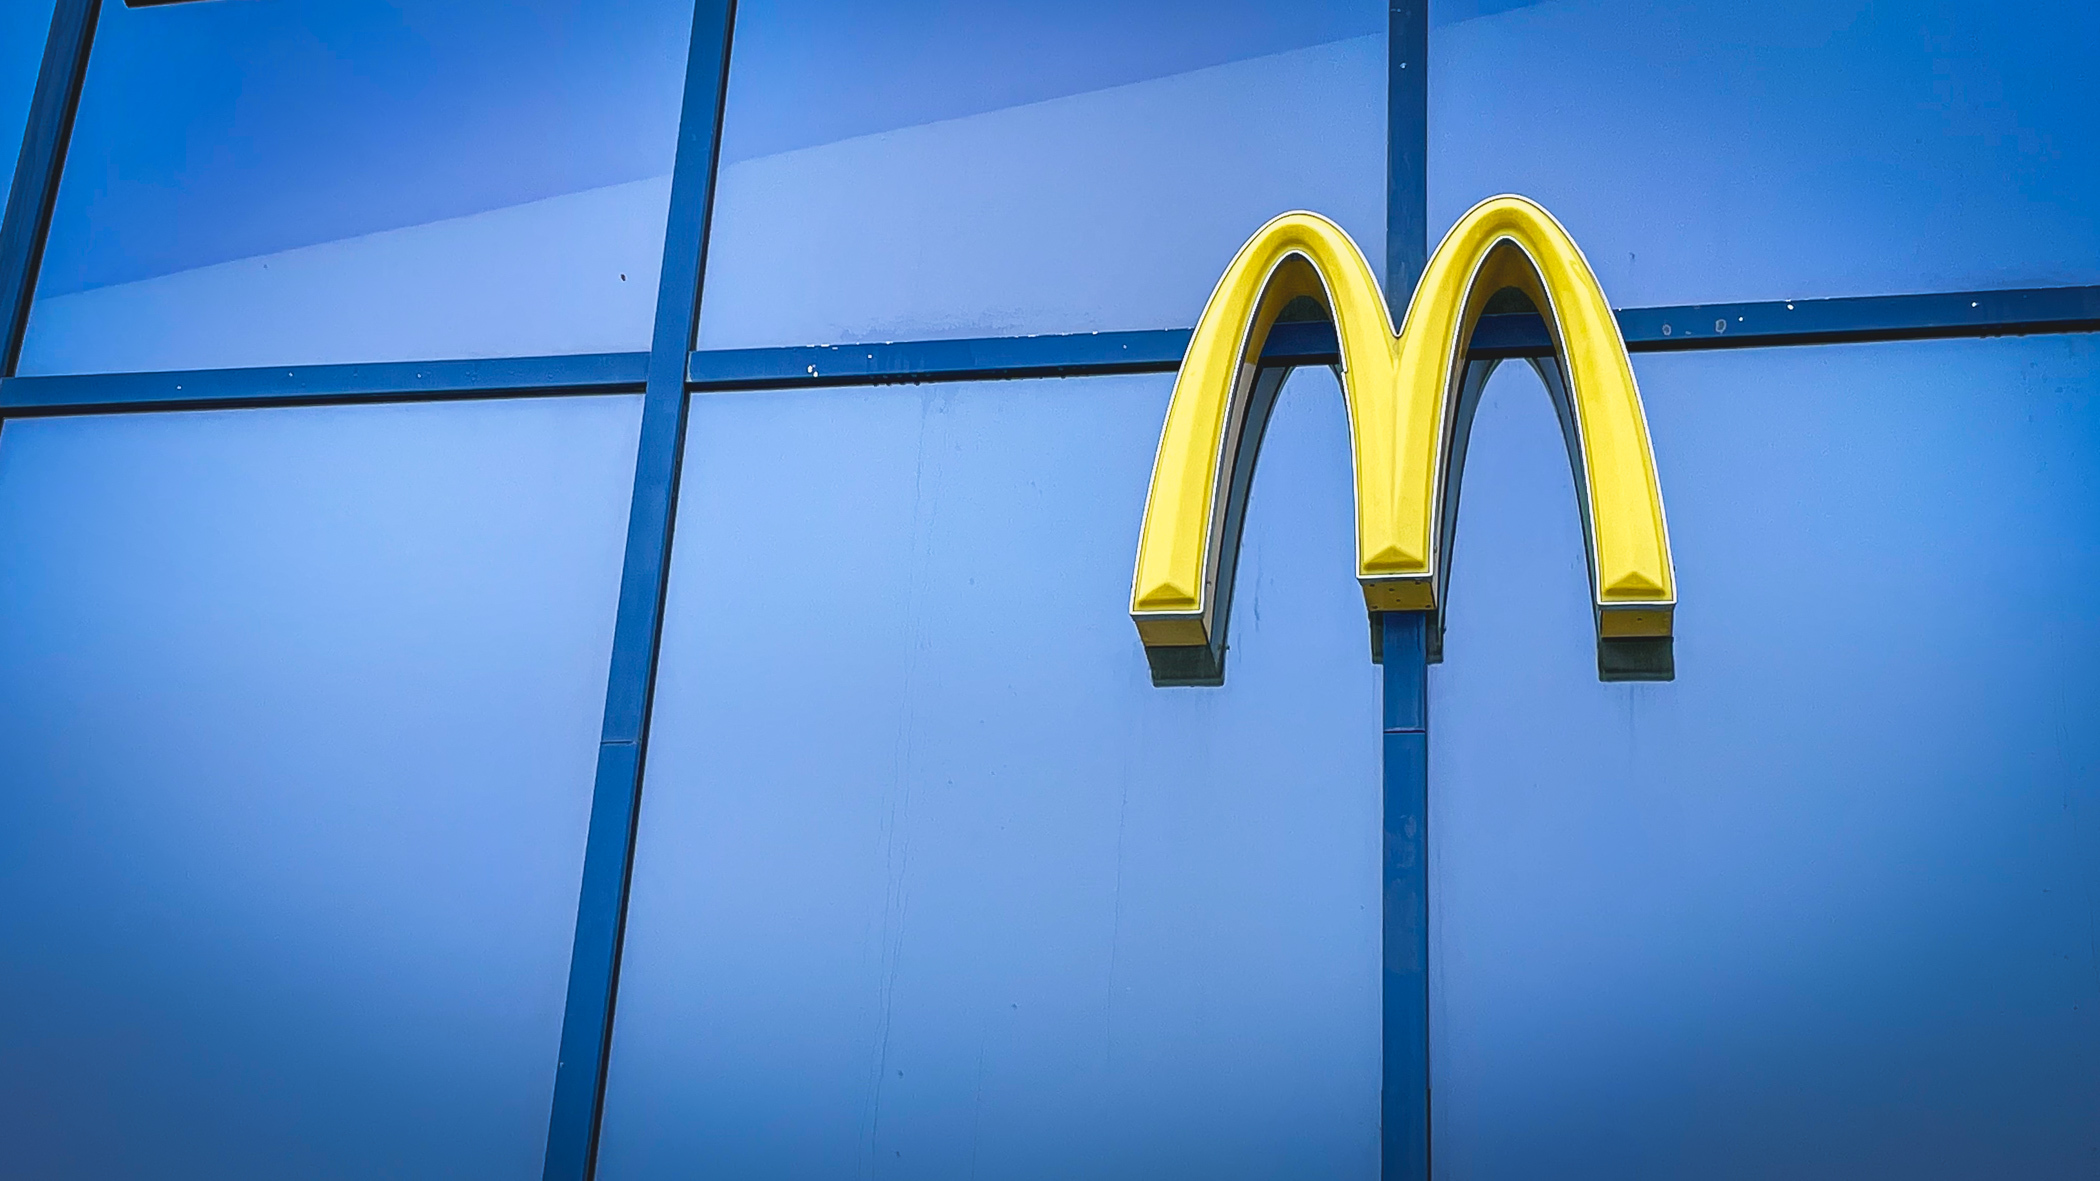 Суд и точка: владелец приморских пит-стопов будет судиться с новым McDonald’s